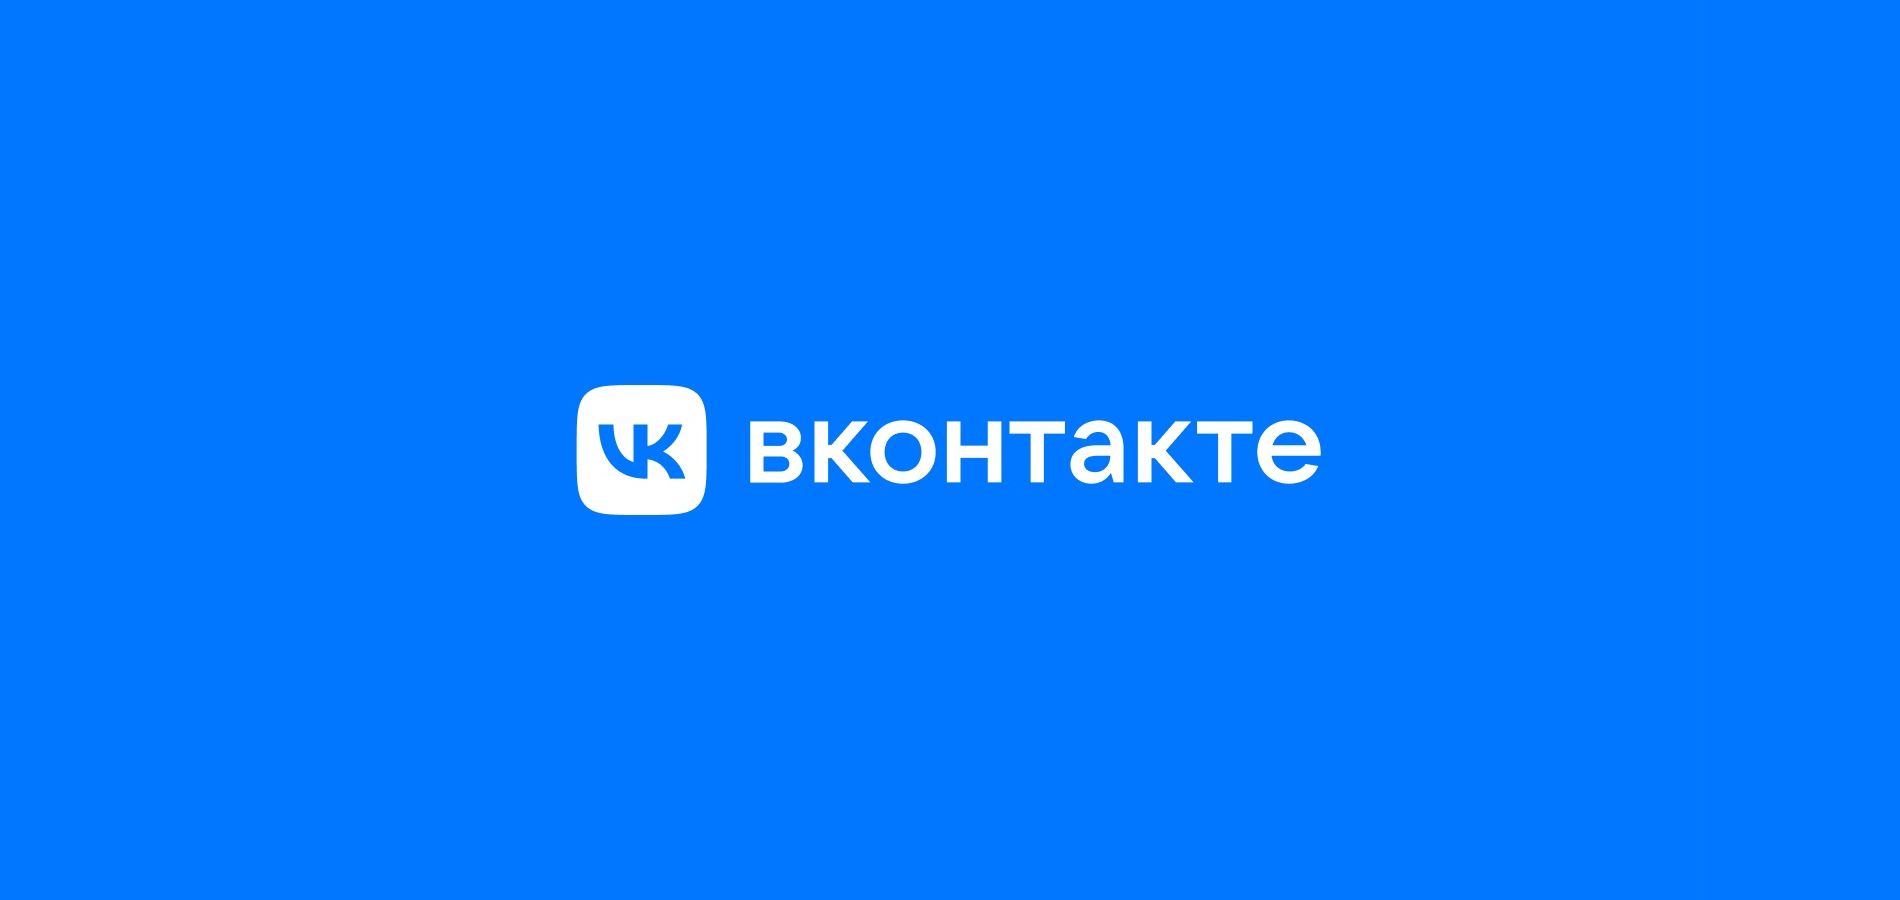 Обновления ВКонтакте: подтвержденные аккаунты и кабинет для налоговых выплат